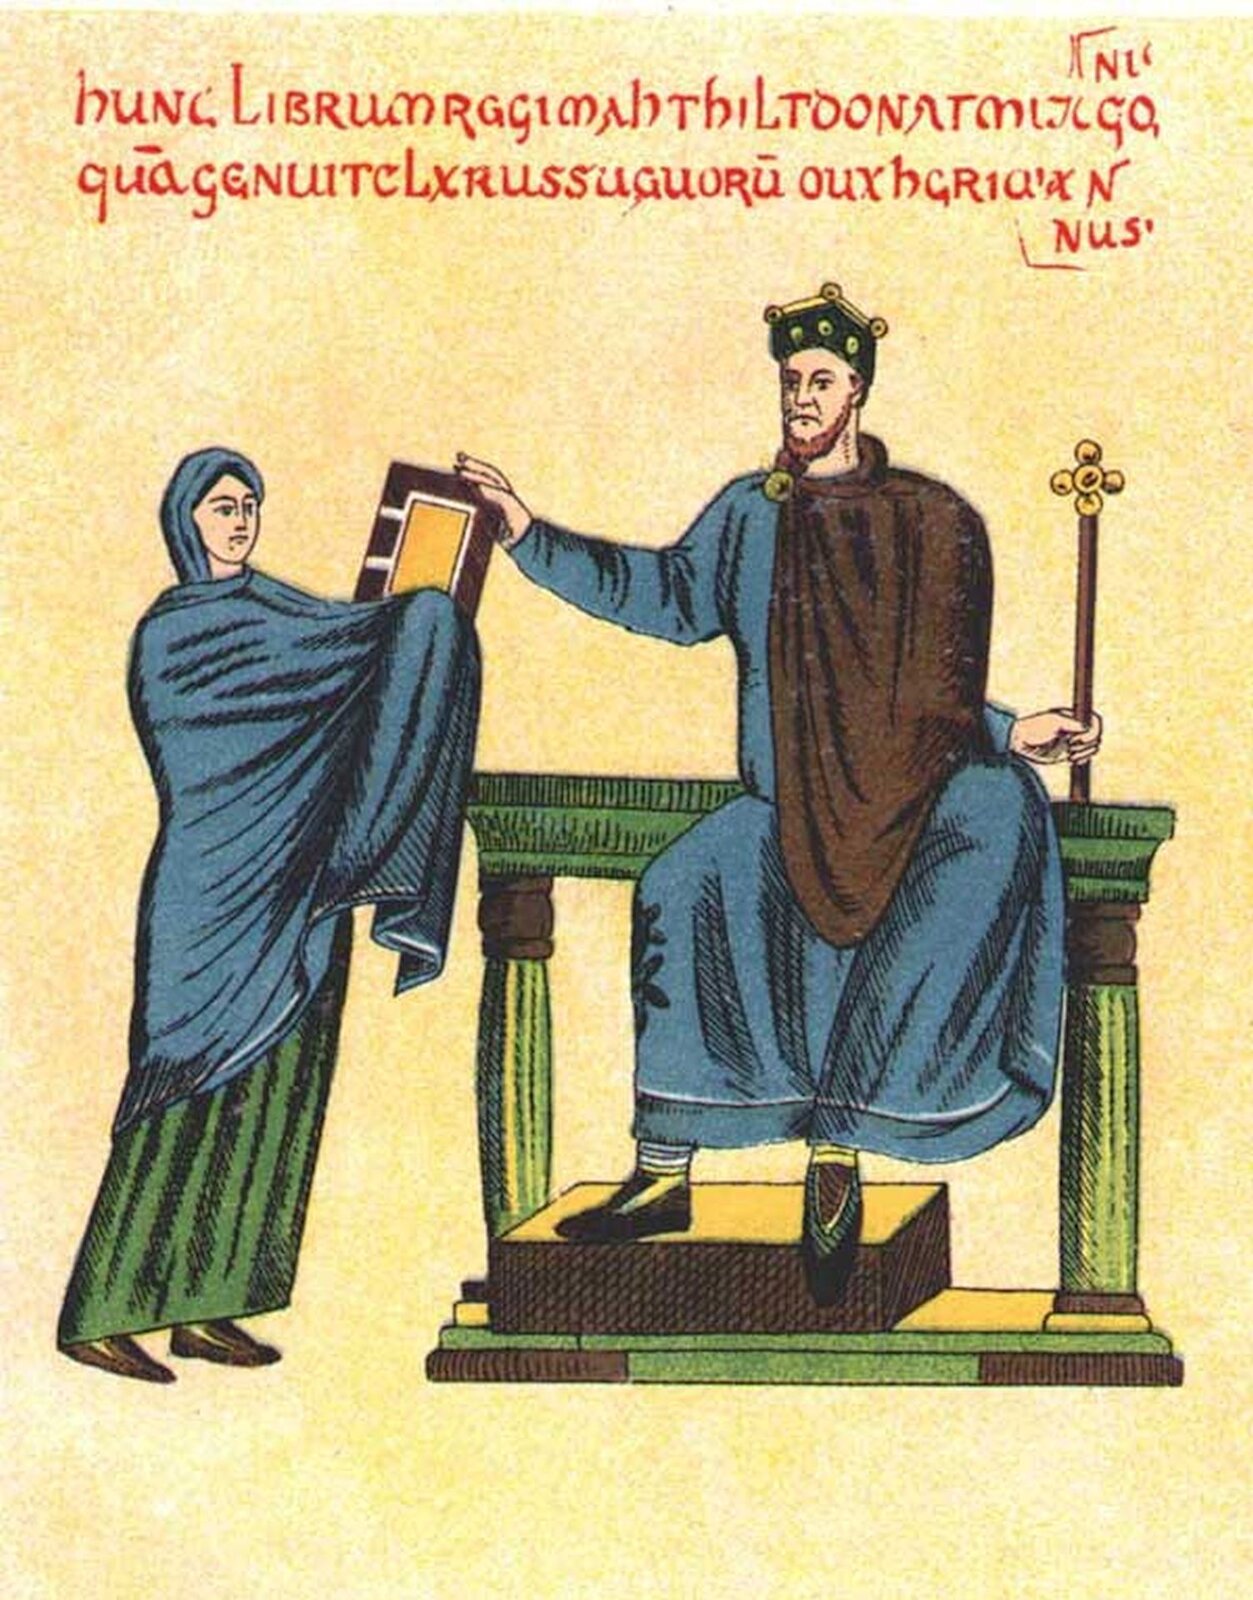 Ilustracja nieznanego autora pod tytułem „Księżna Matylda wręcza księgę liturgiczną Mieszkowi II”. Matylda została przedstawiona jako młoda kobieta ubrana w długą zieloną suknię. Jej głowa oraz tors są przykryte niebieskim materiałem. Kobieta przekazuje księgę liturgiczną Mieszkowi II, który siedzi na tronie. Mieszko II został przedstawiony jako mężczyzna w średnim wieku, na jego głowie widnieje korona. Ubrany jest w niebieską sukmanę, a na jego ramionach i barkach znajduje się brązowa peleryna. W ręku trzyma berło. 